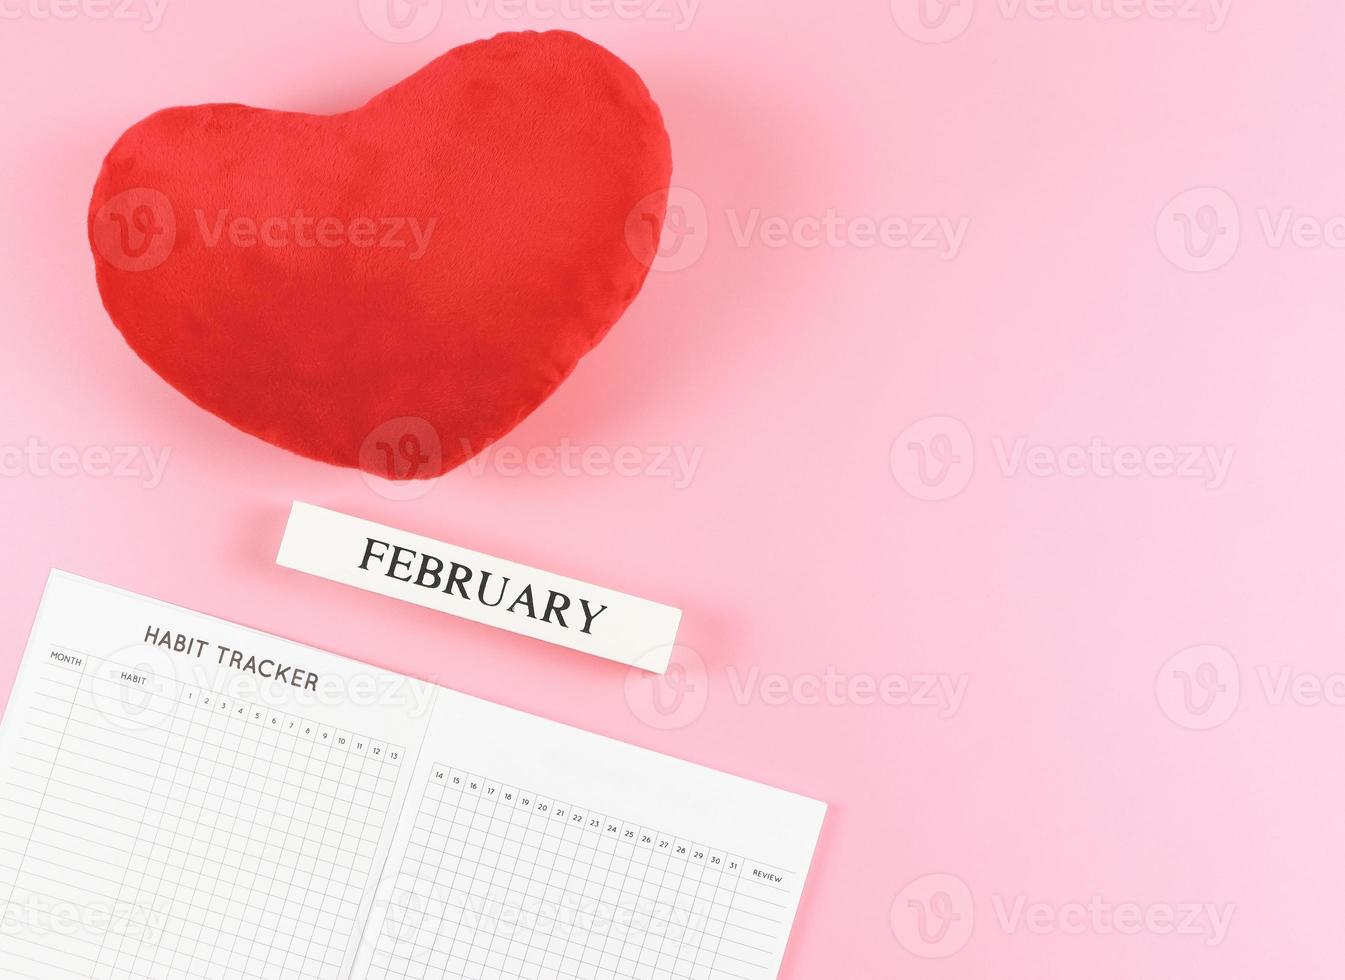 lat posare di abitudine inseguitore prenotare, di legno calendario febbraio, rosso cuore forma cuscino su rosa sfondo con copia spazio. foto